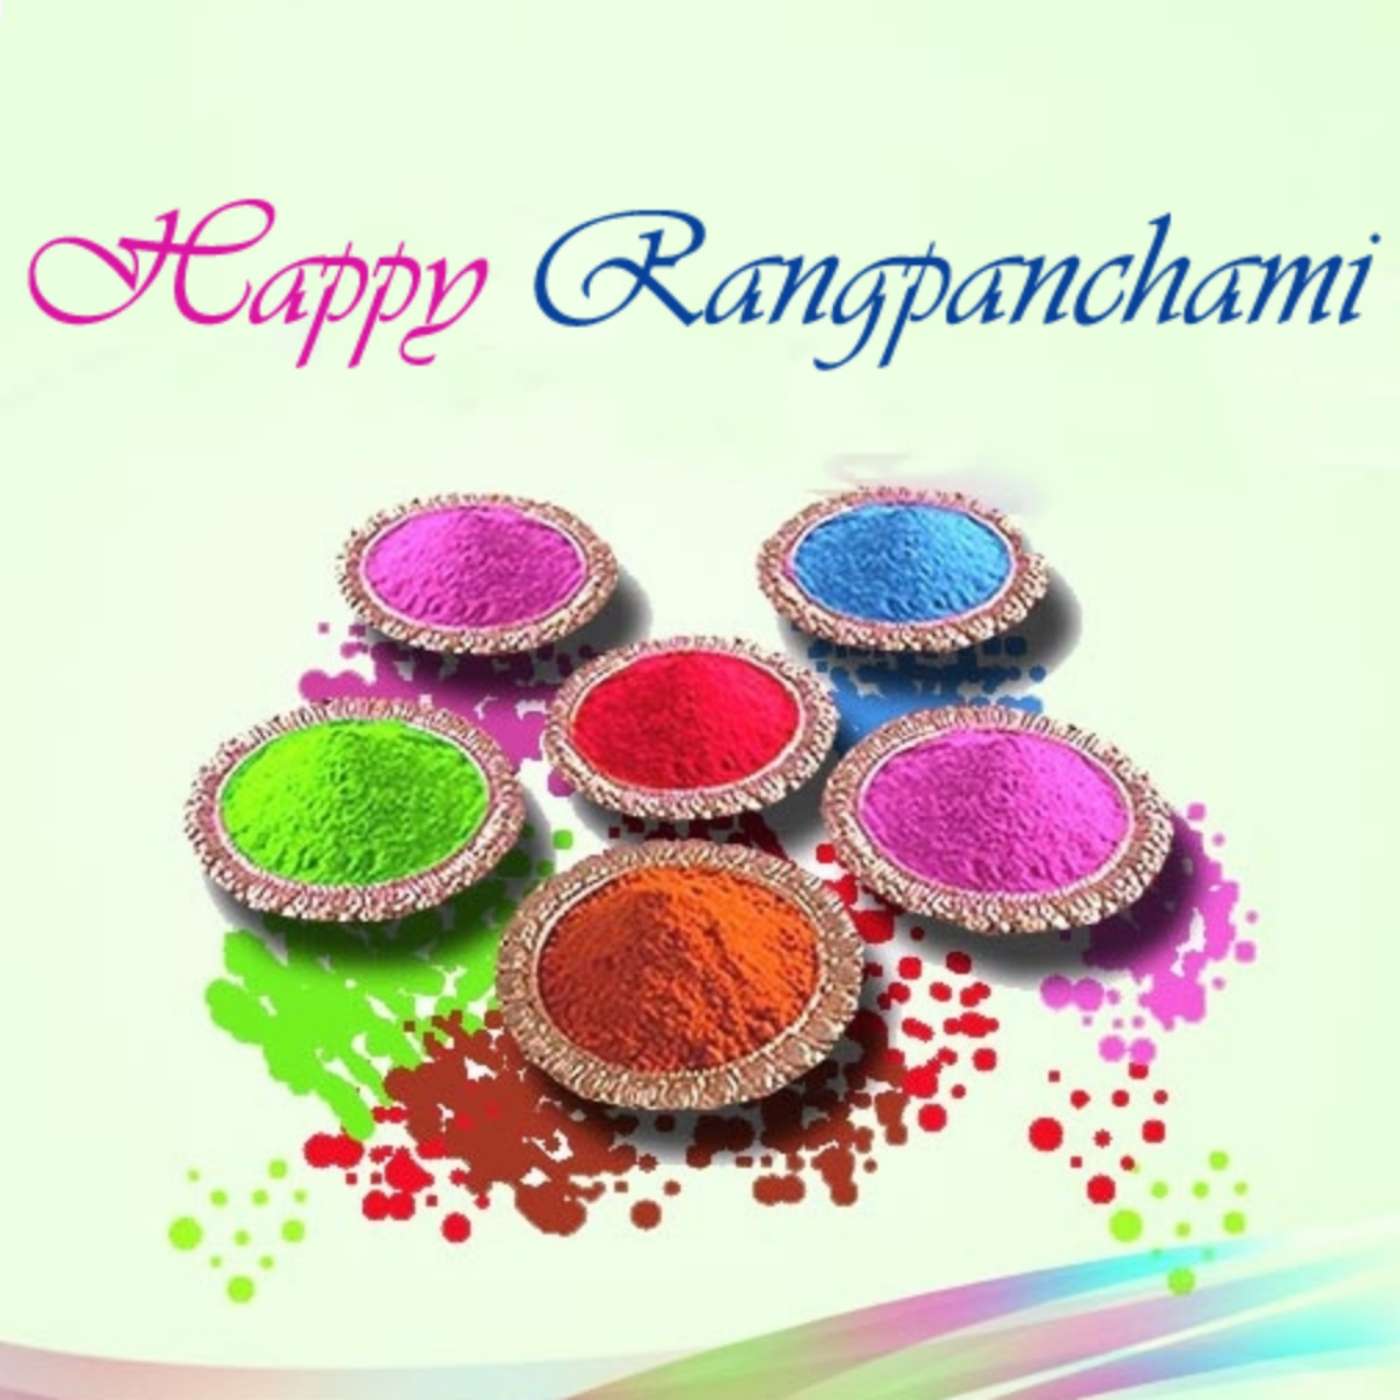 Happy Rangpanchami 2022 Images Hd Download - ShayariMaza